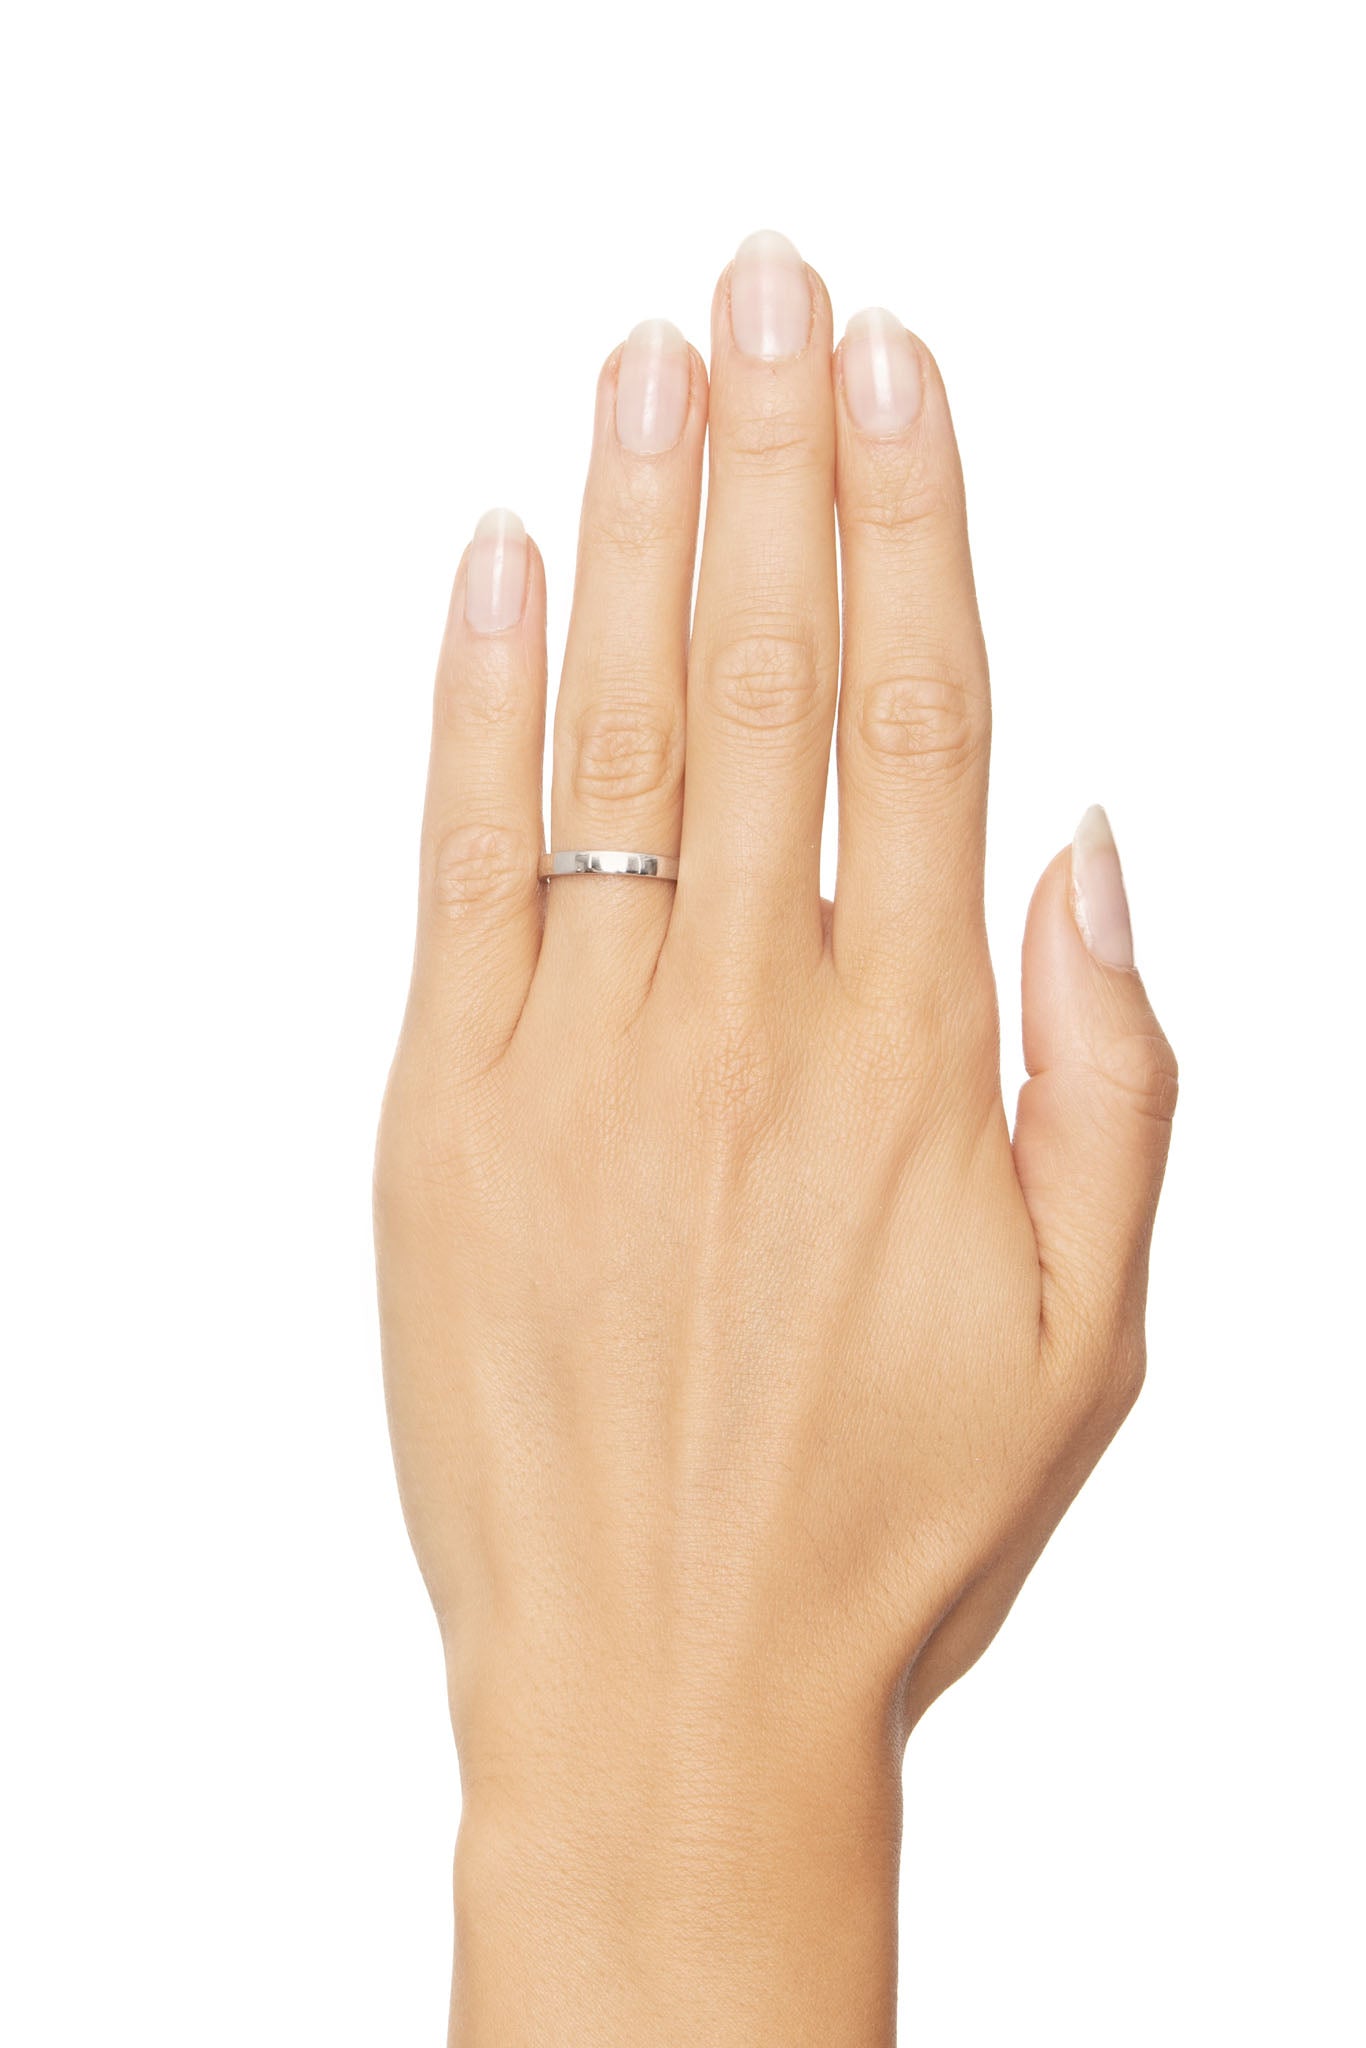 Efva Attling Half Round Thin Ring valkokultainen sormus